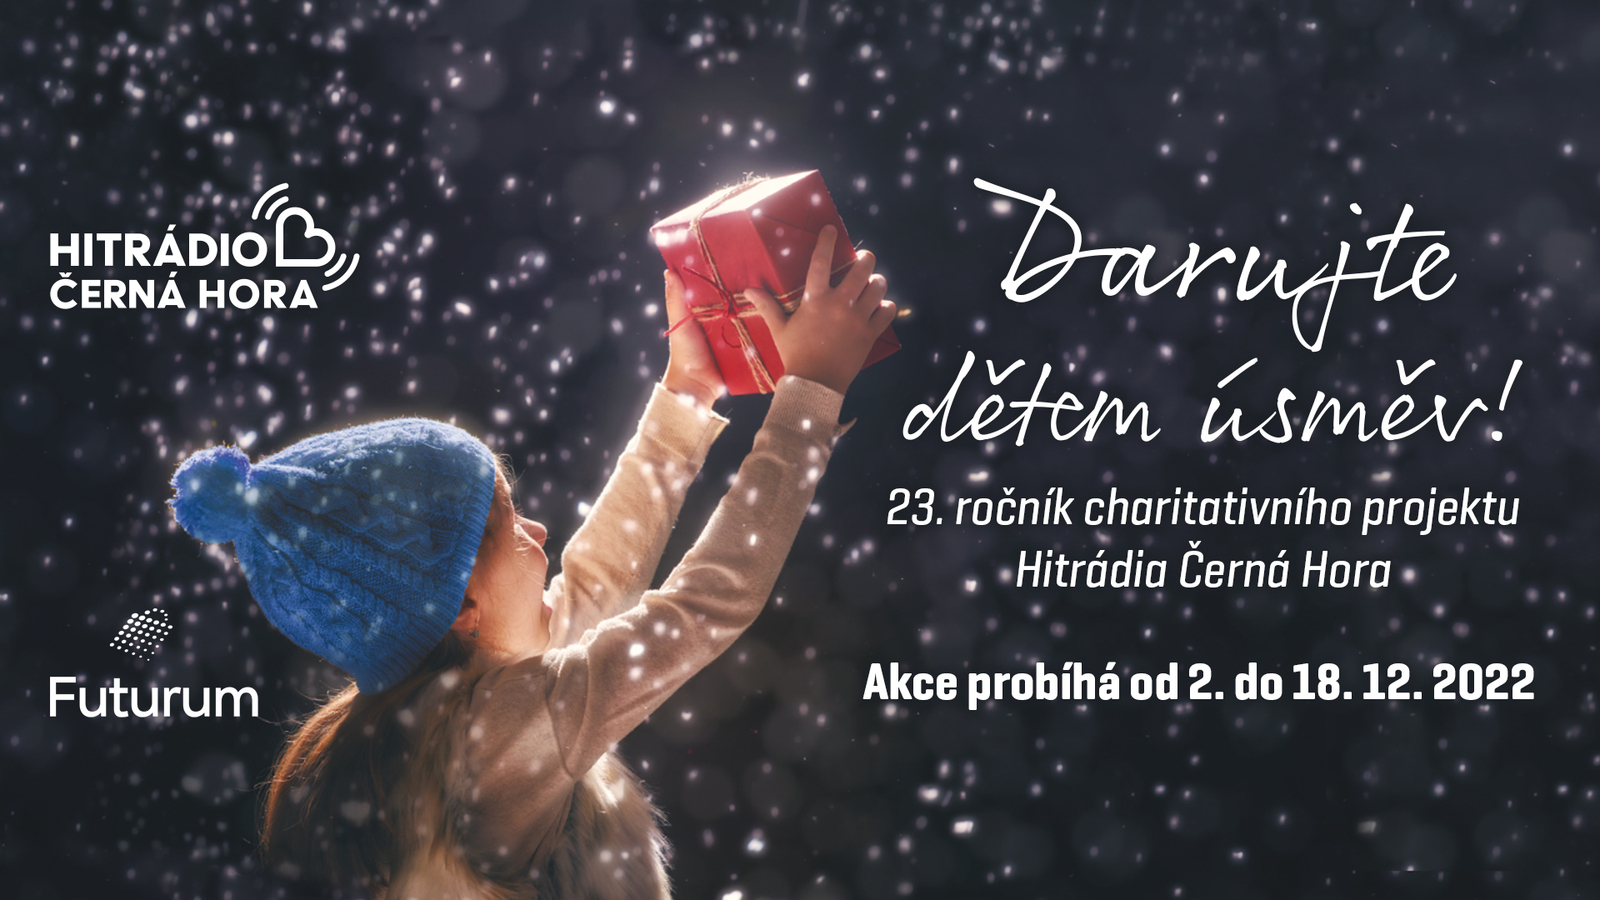 DARUJTE DĚTEM ÚSMĚV! 23. ročník charitativní akce s Hitrádiem Černá Hora!